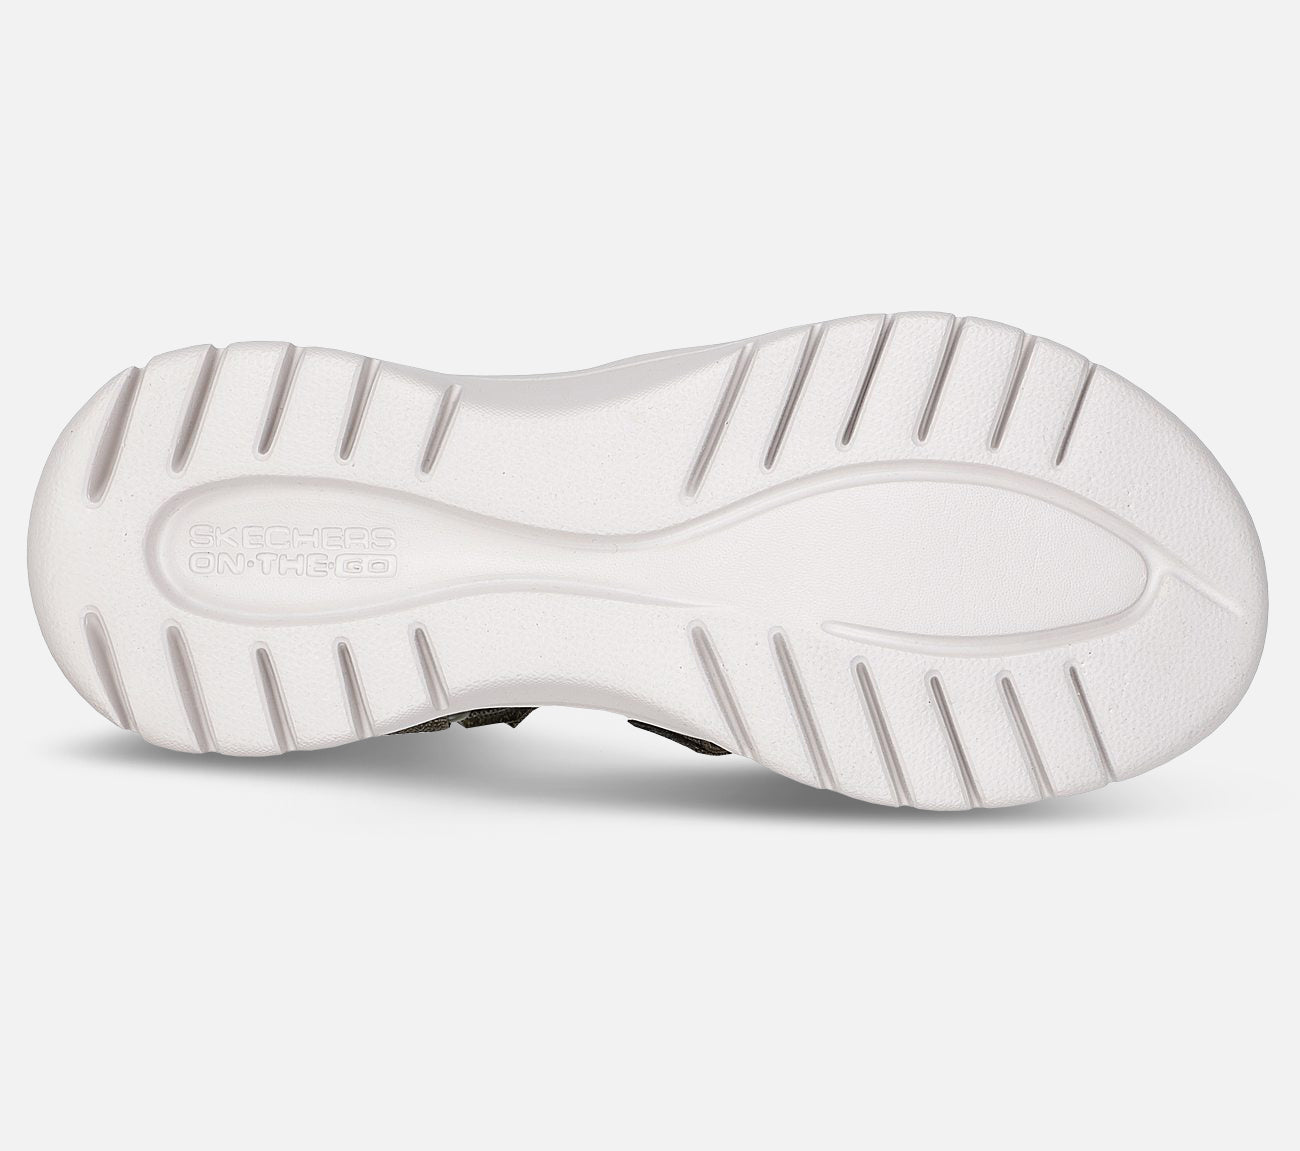 On-The-Go Flex Sandal - Escape Sandal Skechers